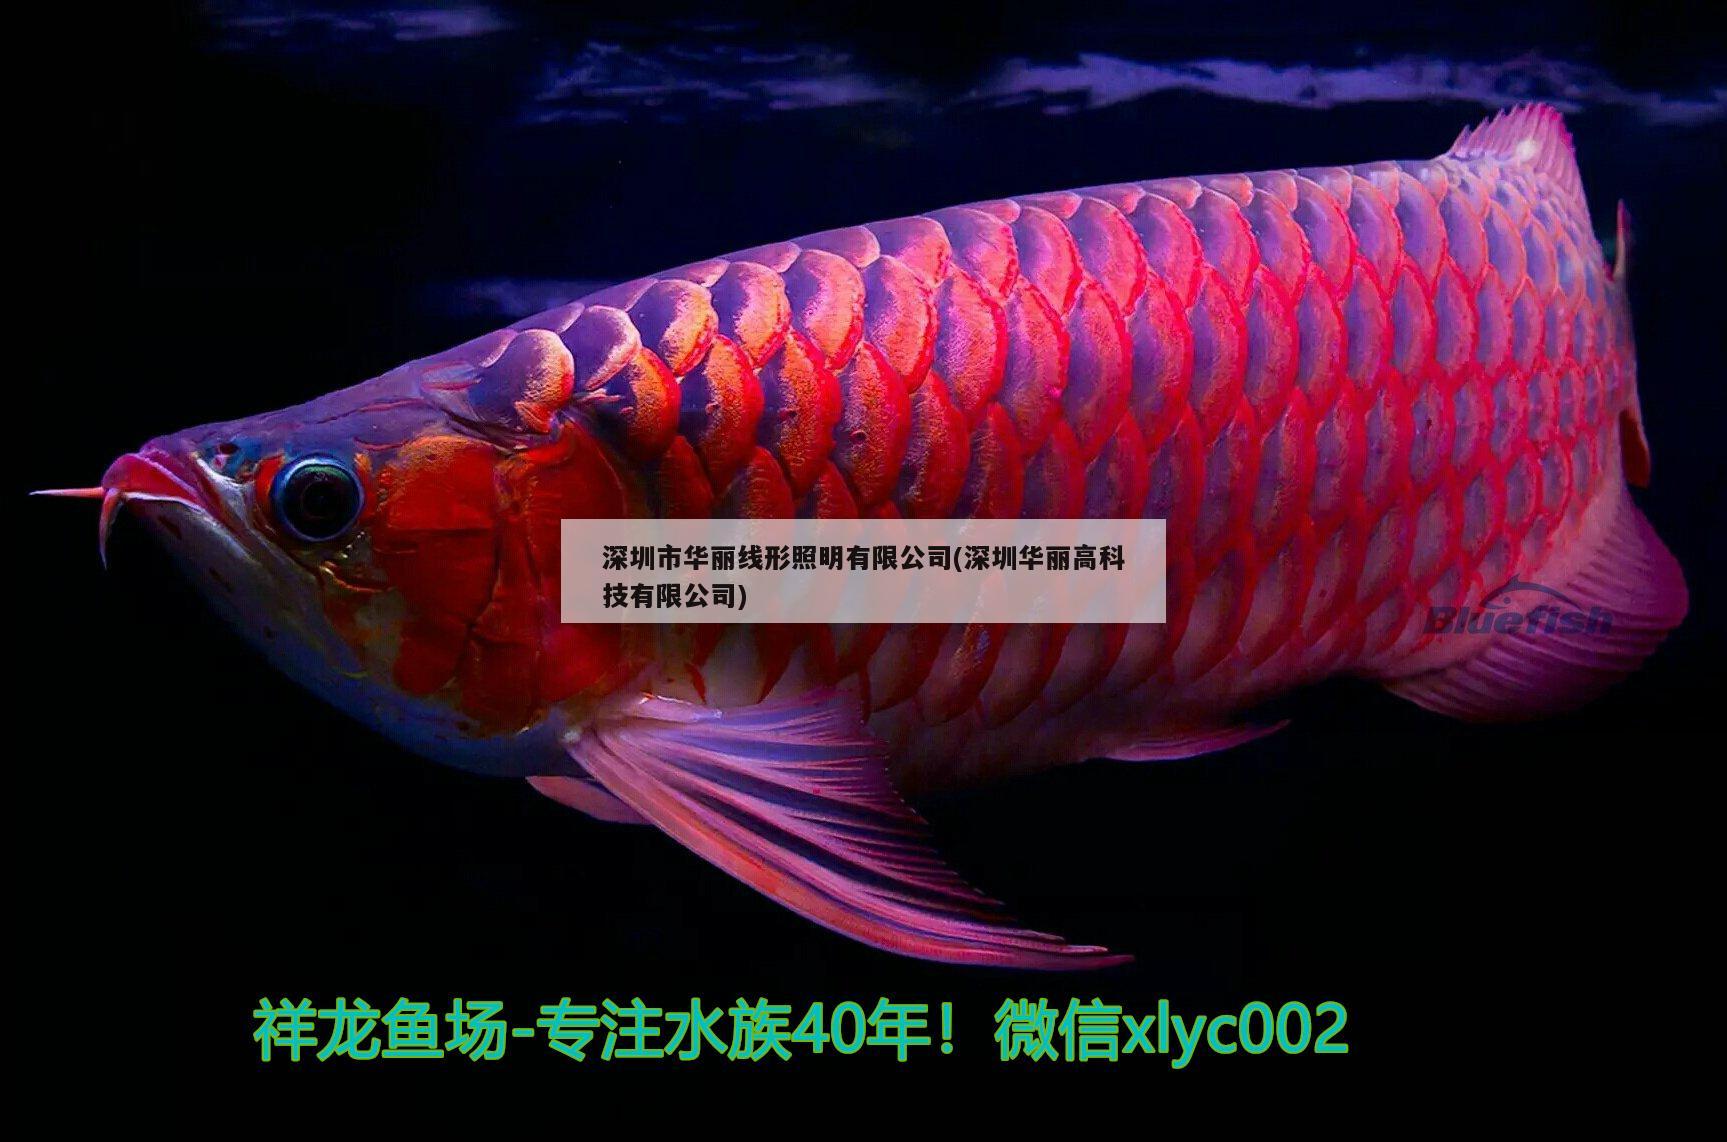 深圳市华丽线形照明有限公司(深圳华丽高科技有限公司) 观赏鱼